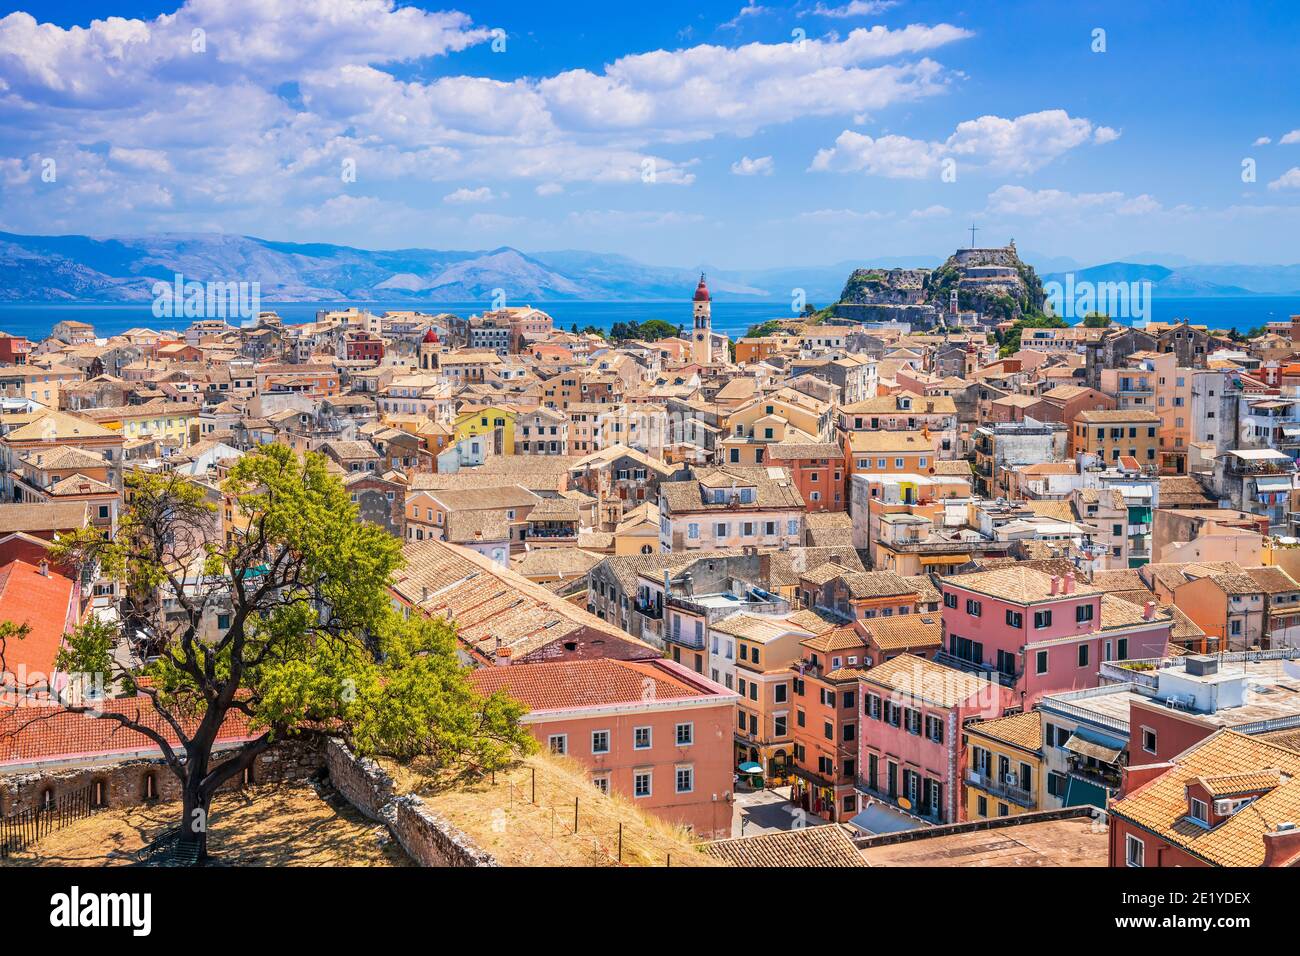 Korfu, Griechenland. Panoramablick auf die Altstadt von der Neuen Festung aus gesehen. Stockfoto